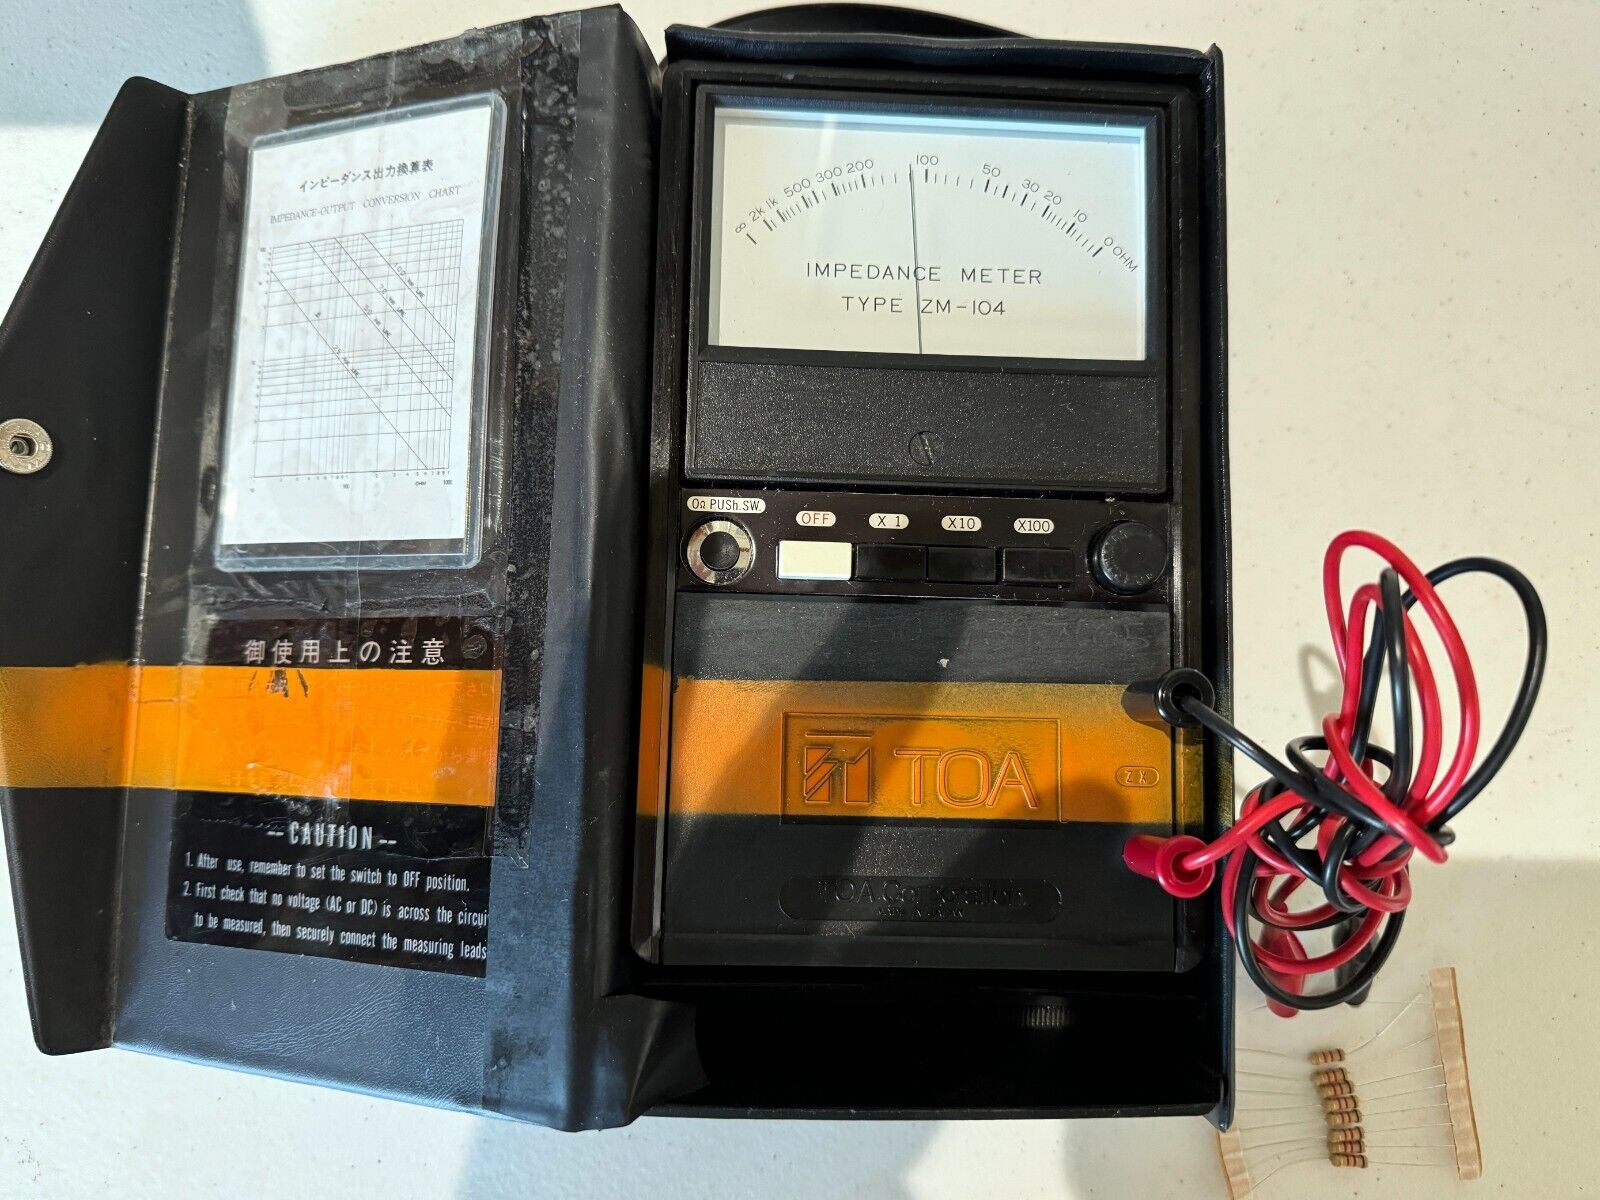 TOA Speaker 25/70 V Impedance (Bridge) Meter, Handheld, Battery Operated ZM-104.